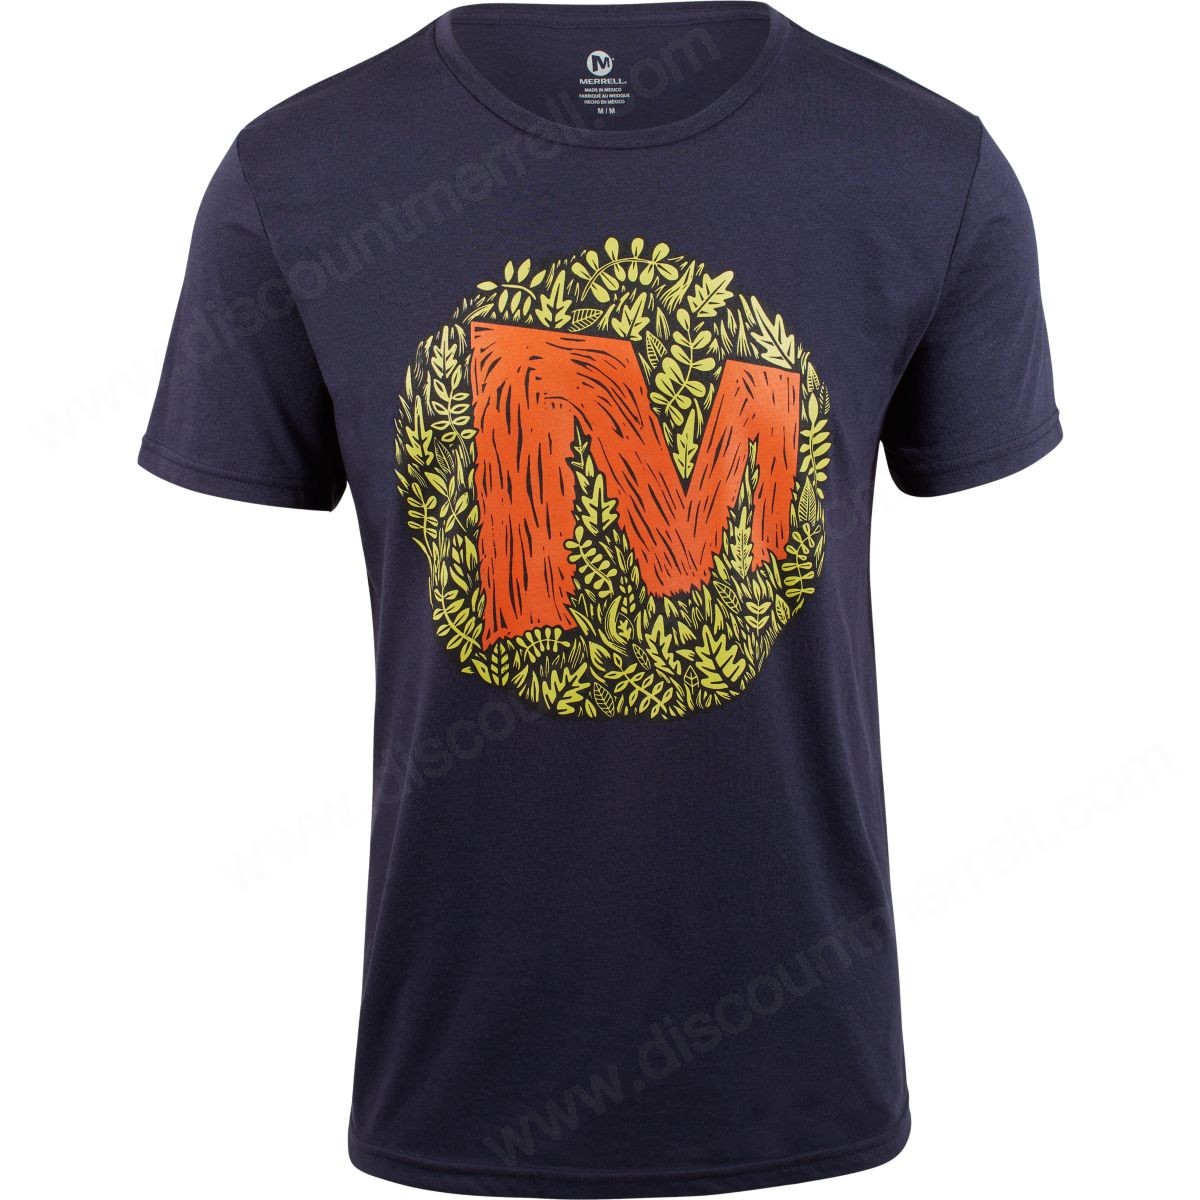 Merrell Man's Merrell Forest Shirts Navy - -0